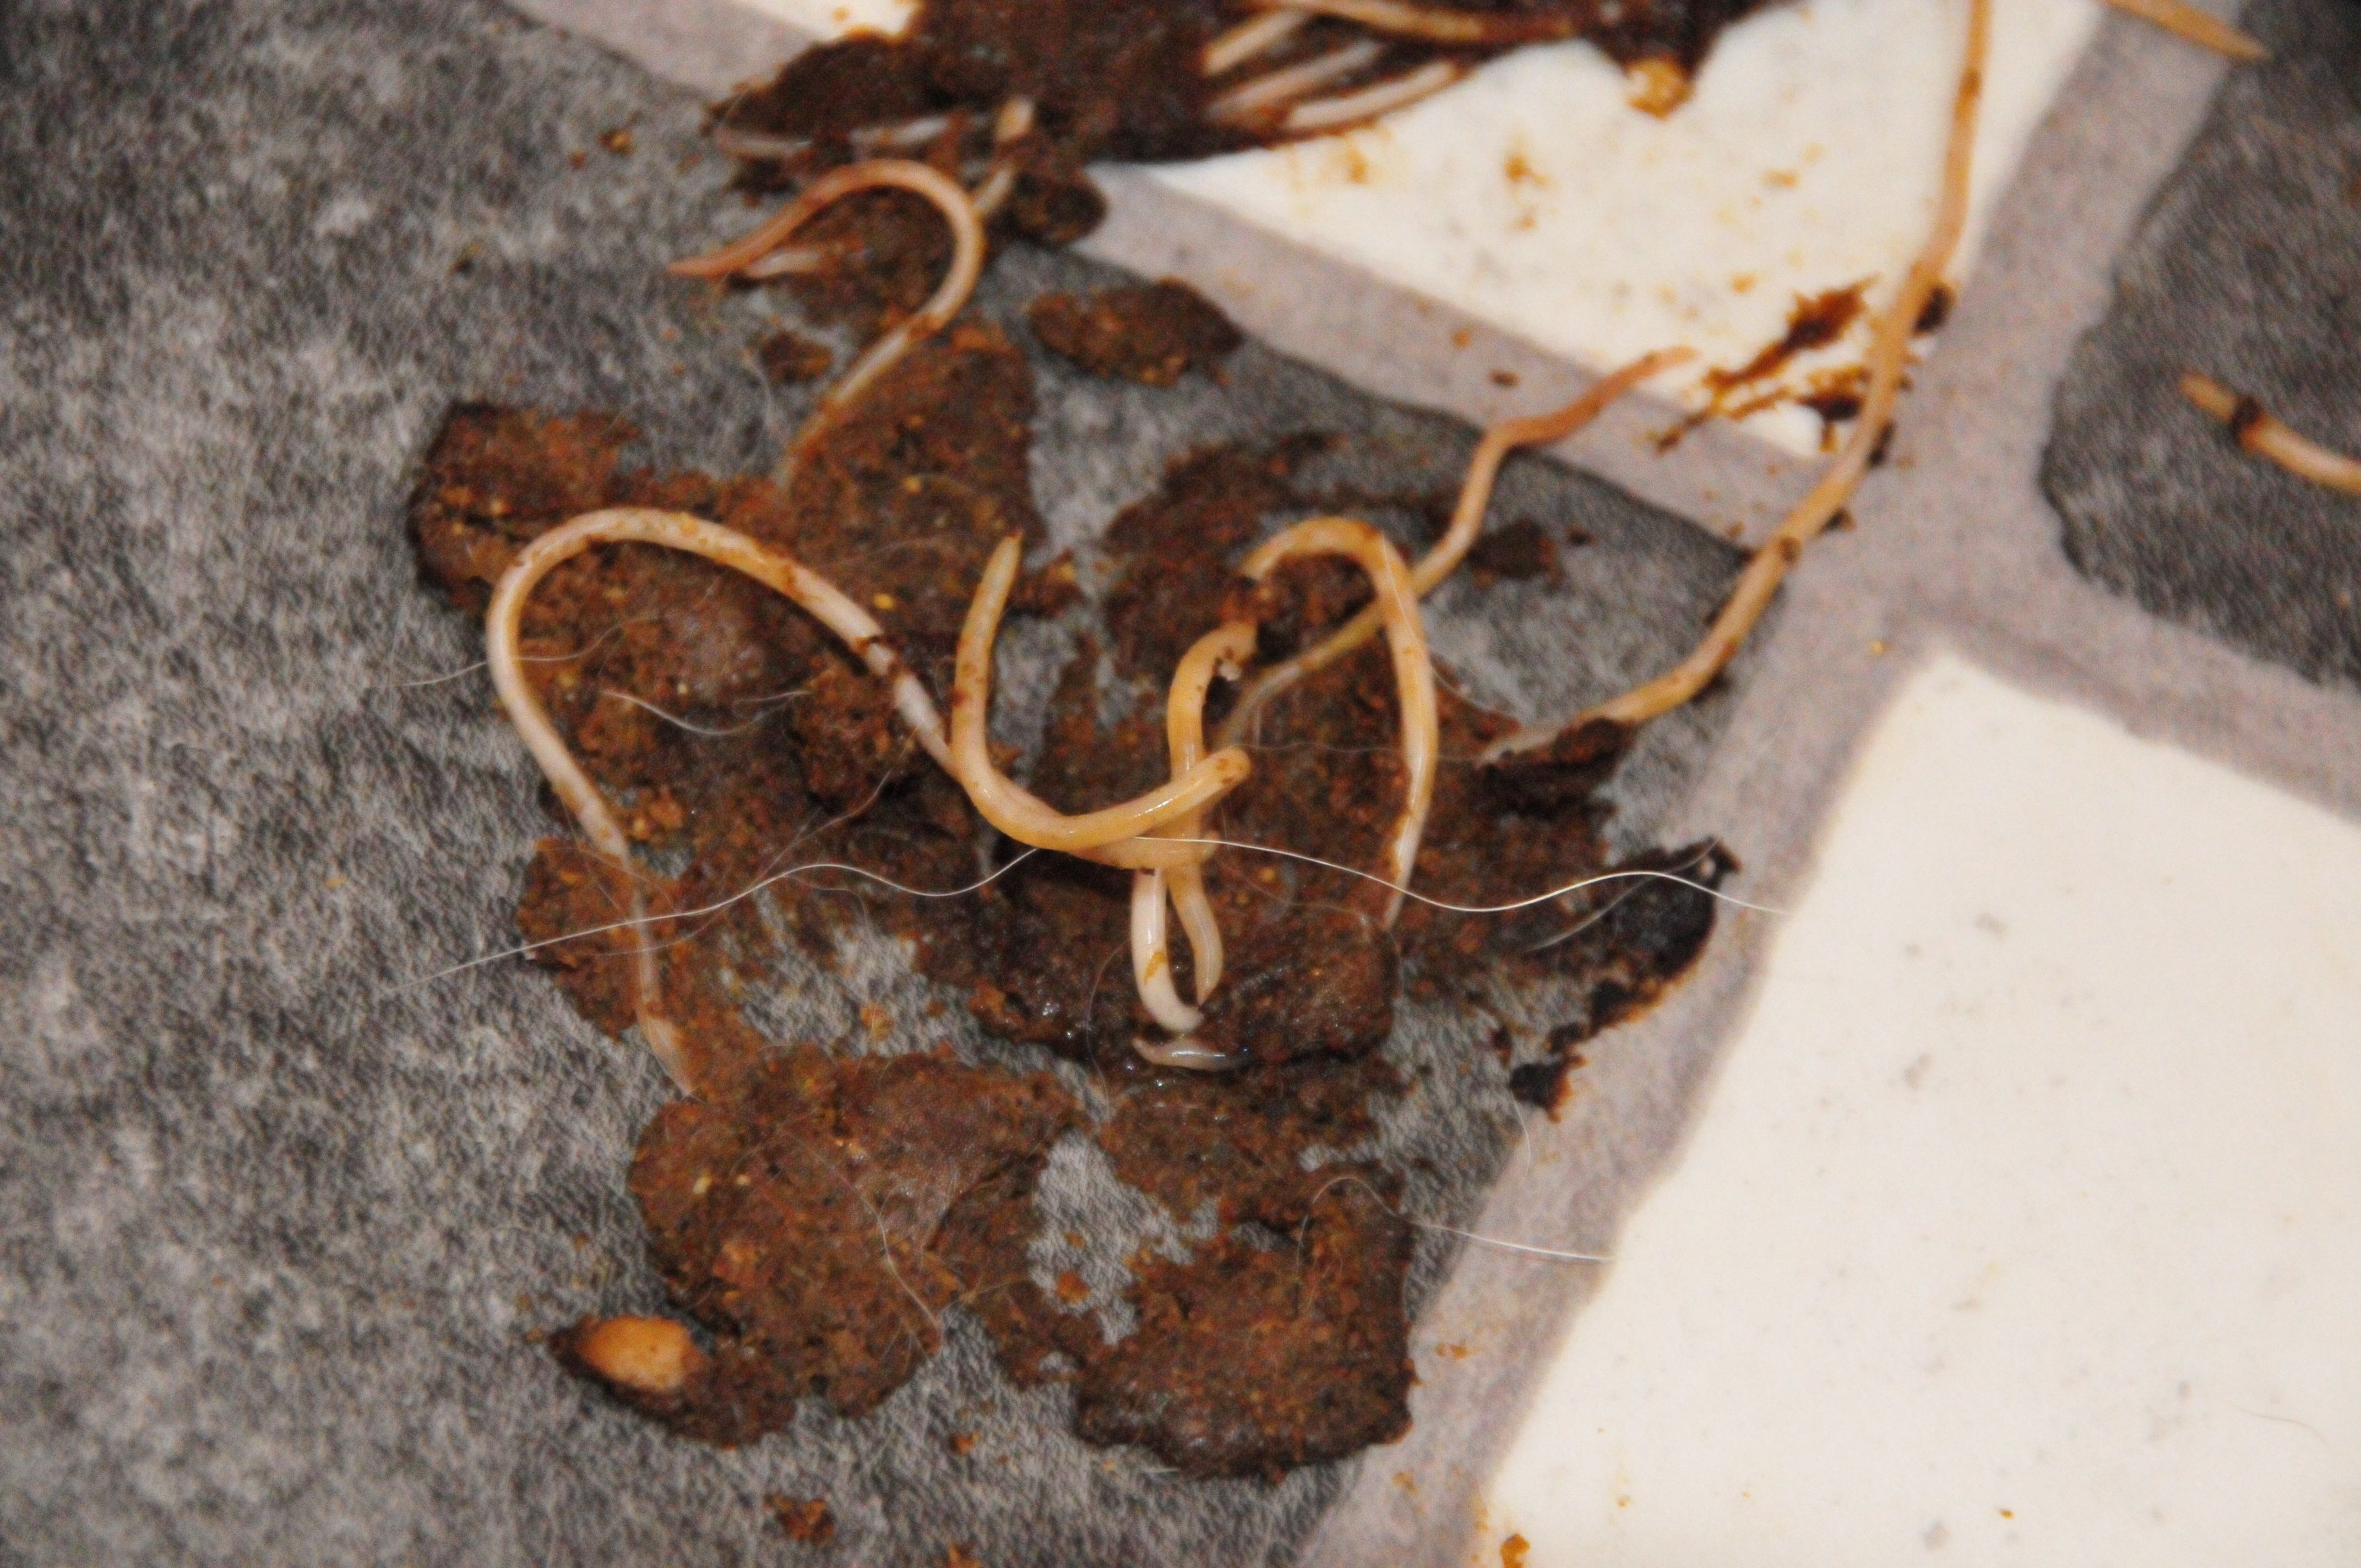 Spulwürmer im Kot von einem 14 Tage alten Welpen. 